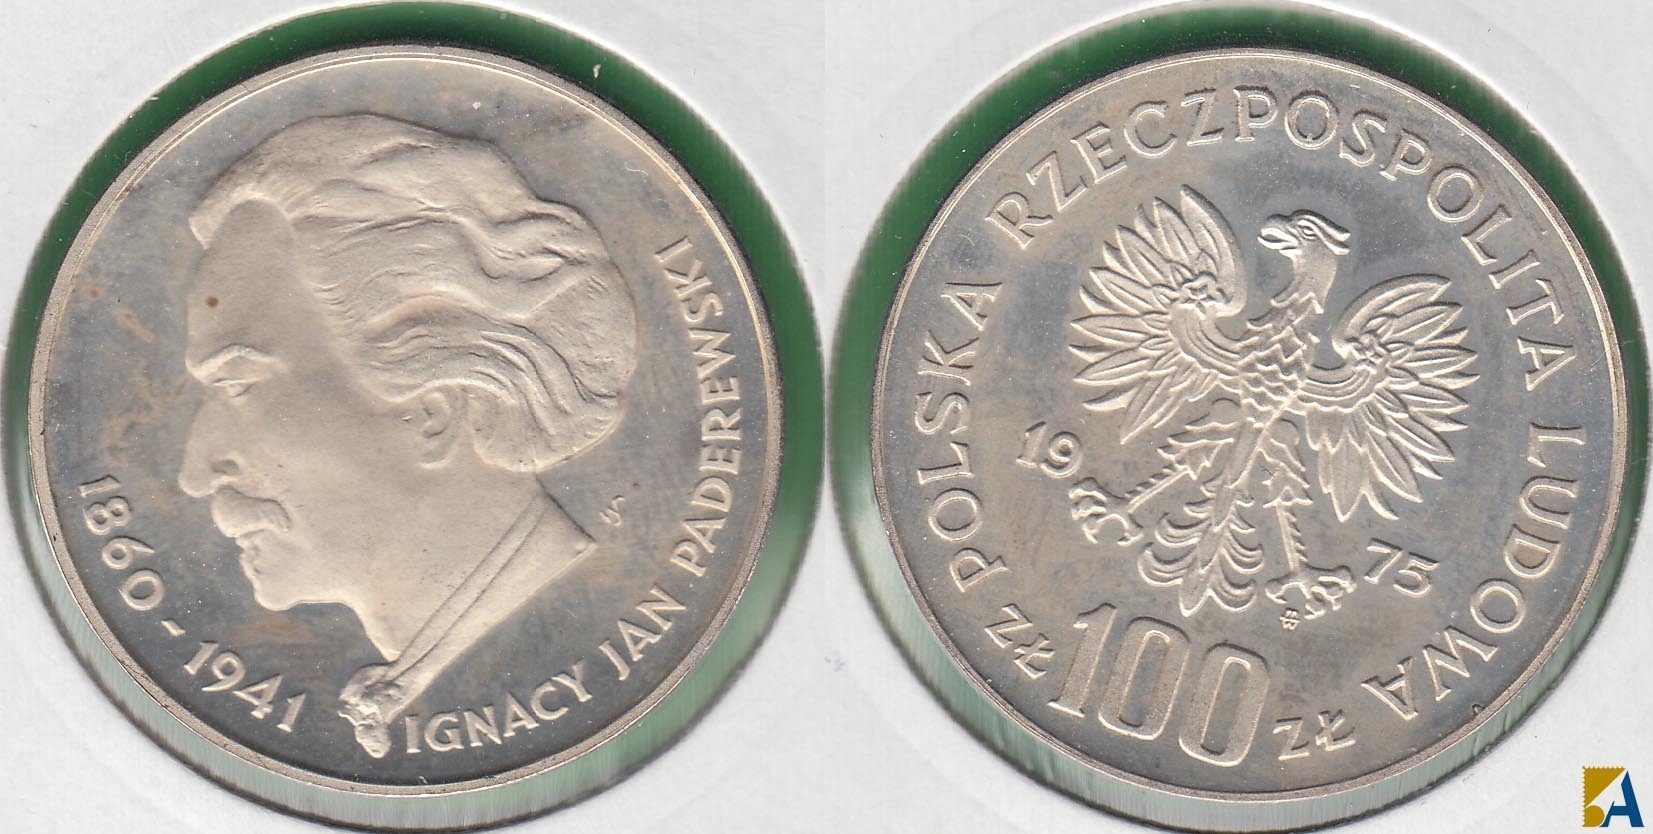 POLONIA - POLSKA. 100 ZLOTYCH DE 1975. PLATA 0.625. (2)